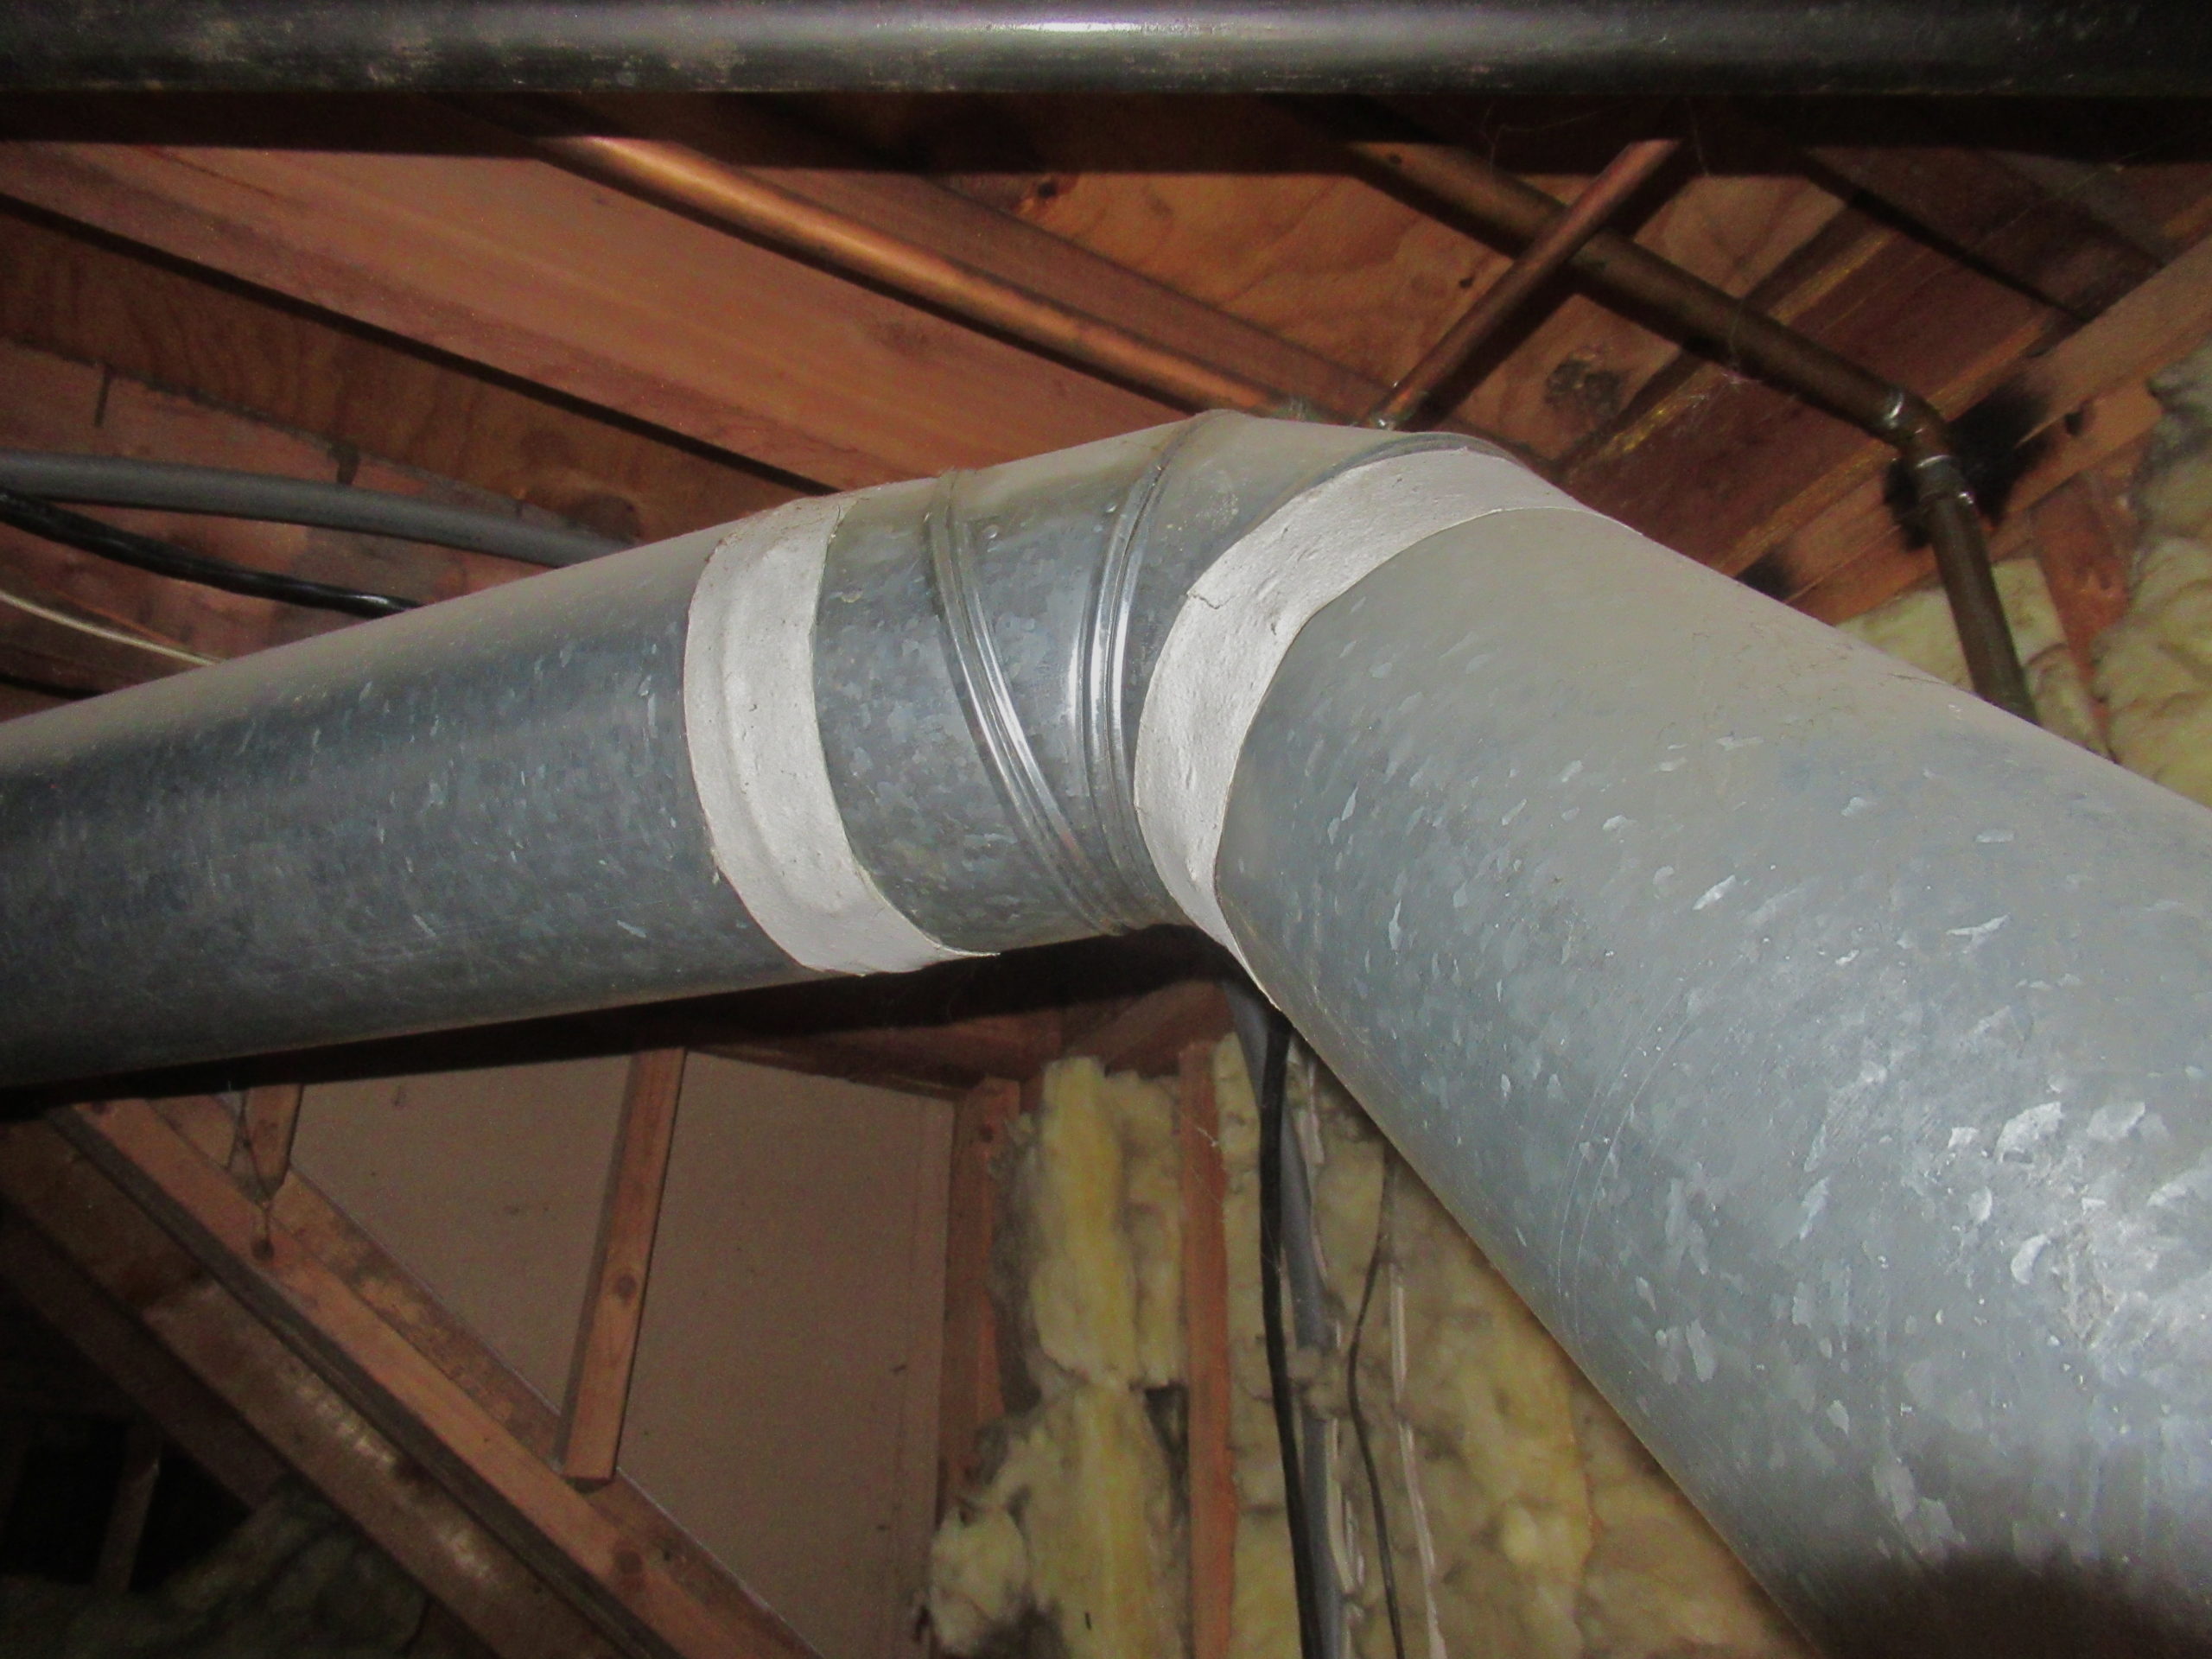 Asbestos tape ducting